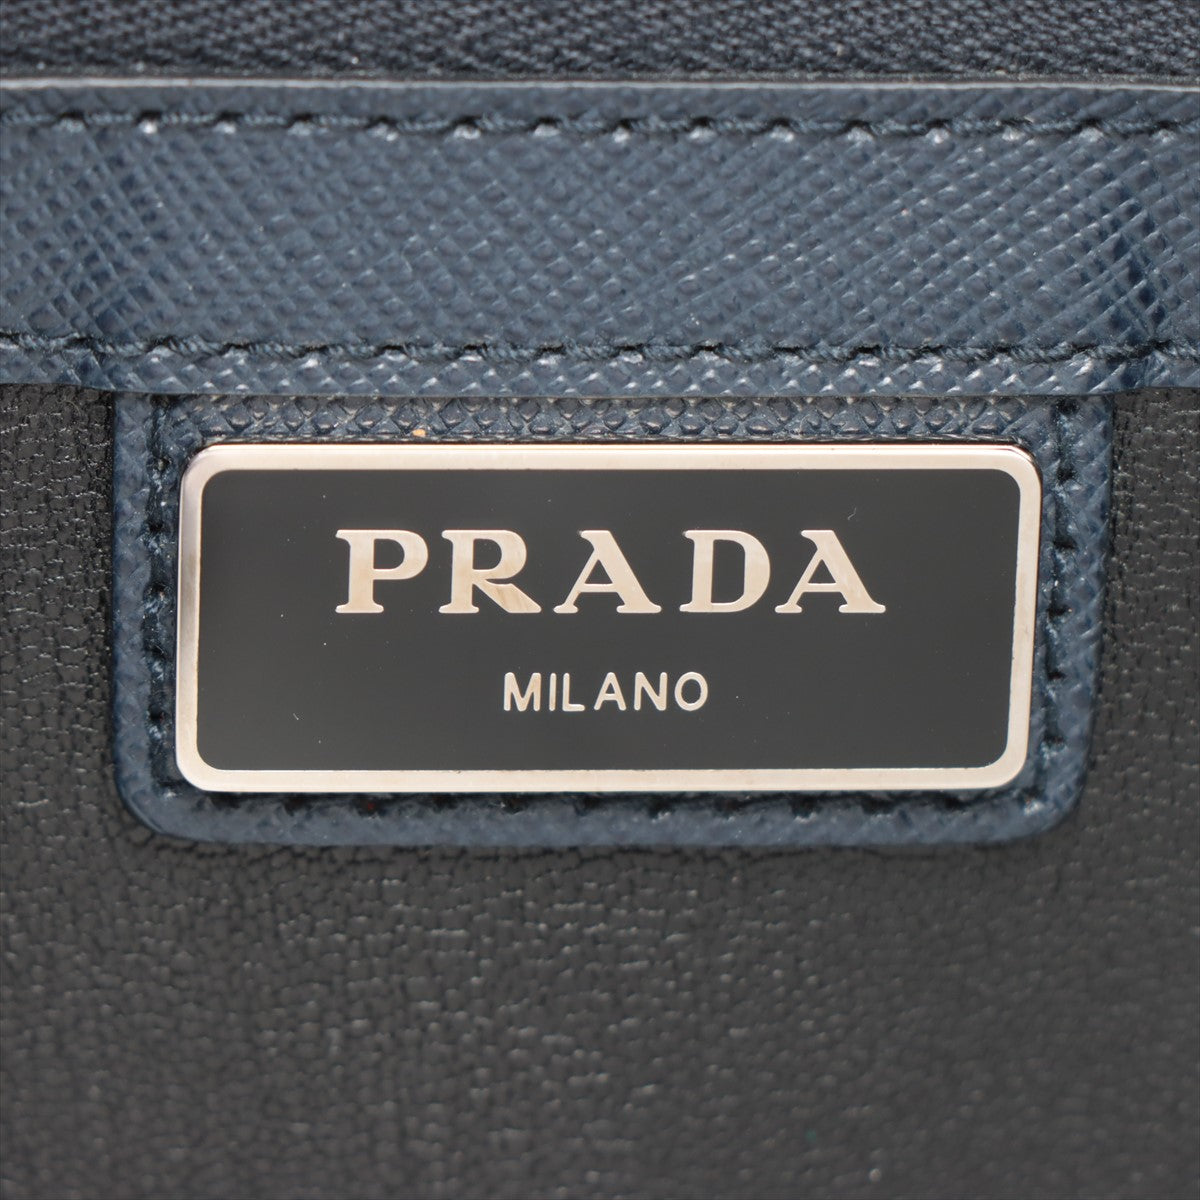 Prada Saffiano Leather Second bag Navy blue